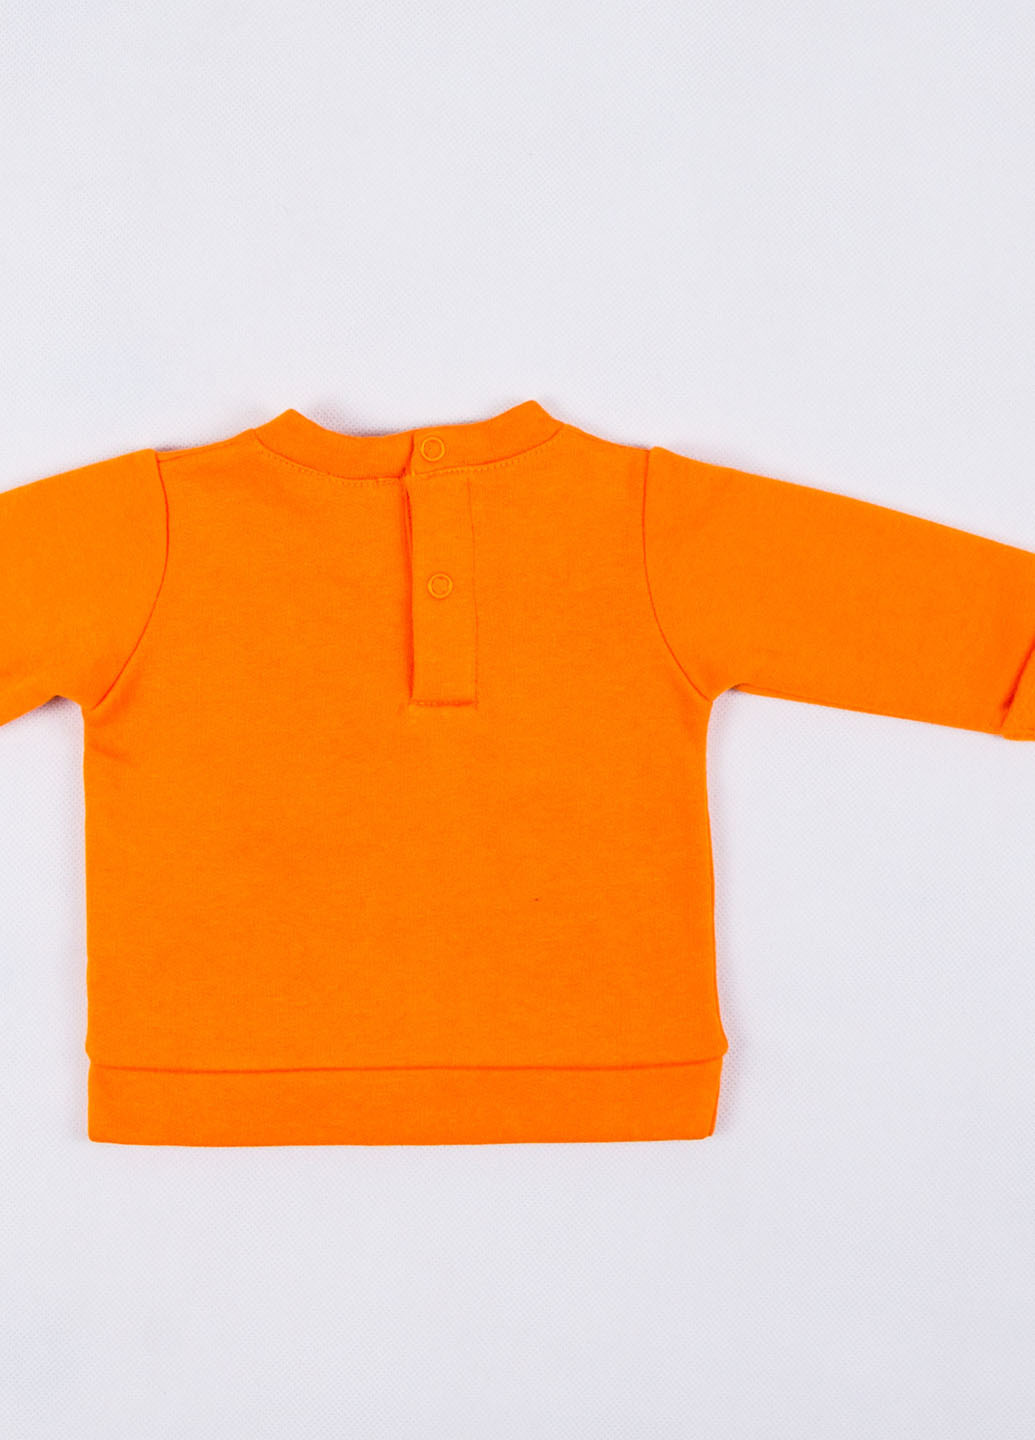 United Colors of Benetton свитшот однотонный оранжевый кэжуал трикотаж, хлопок